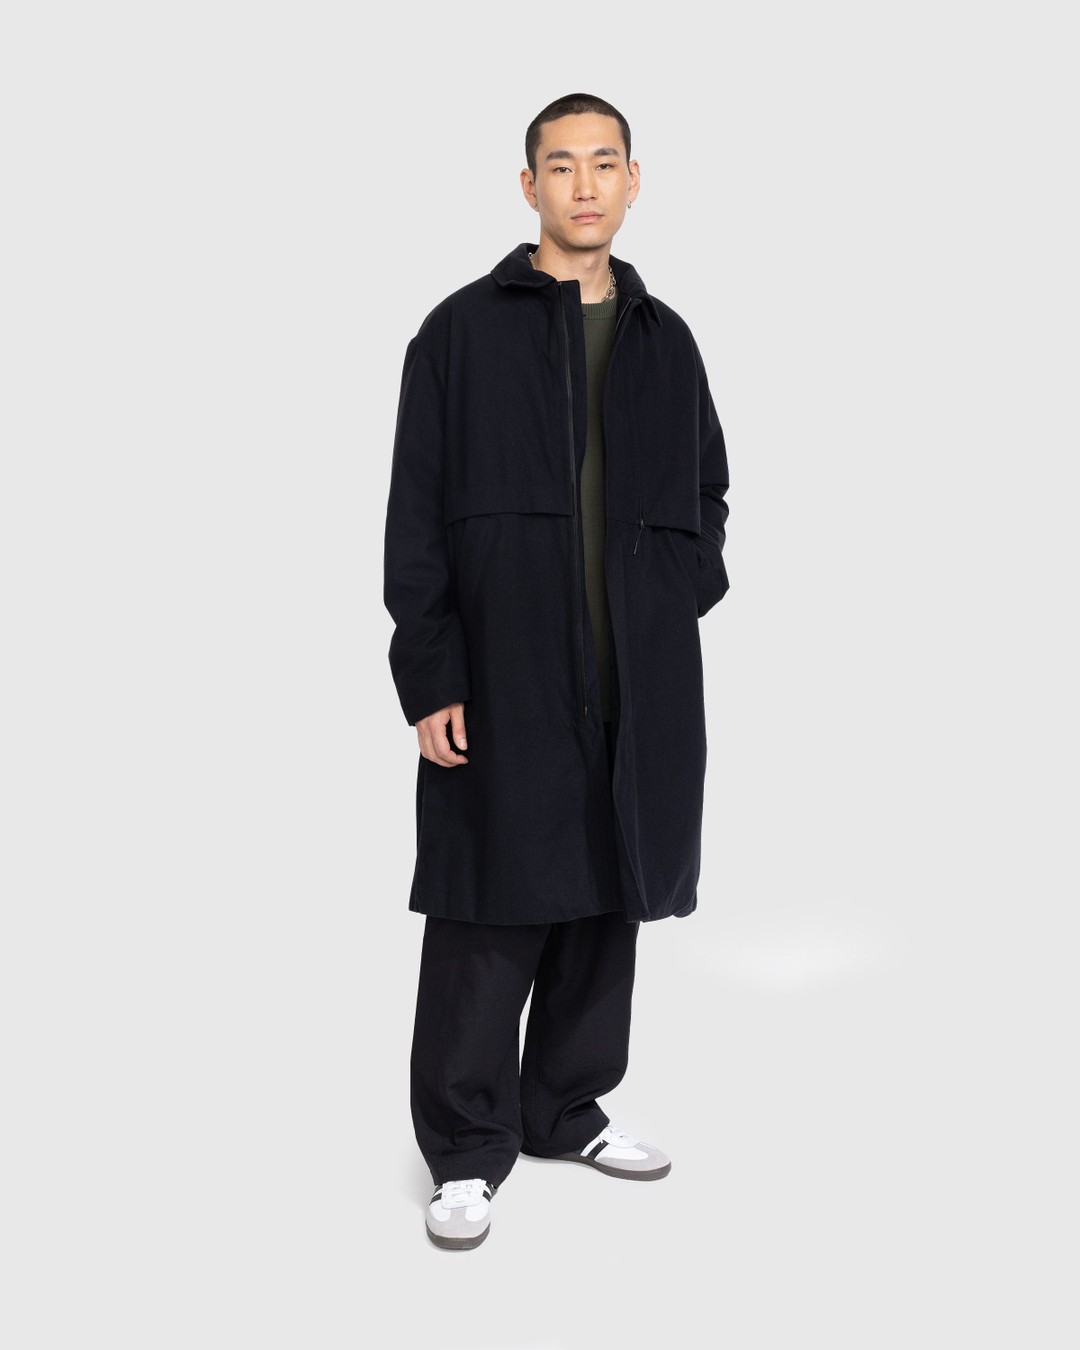 Y-3 – CL RGTX Coat - Outerwear - Black - Image 2